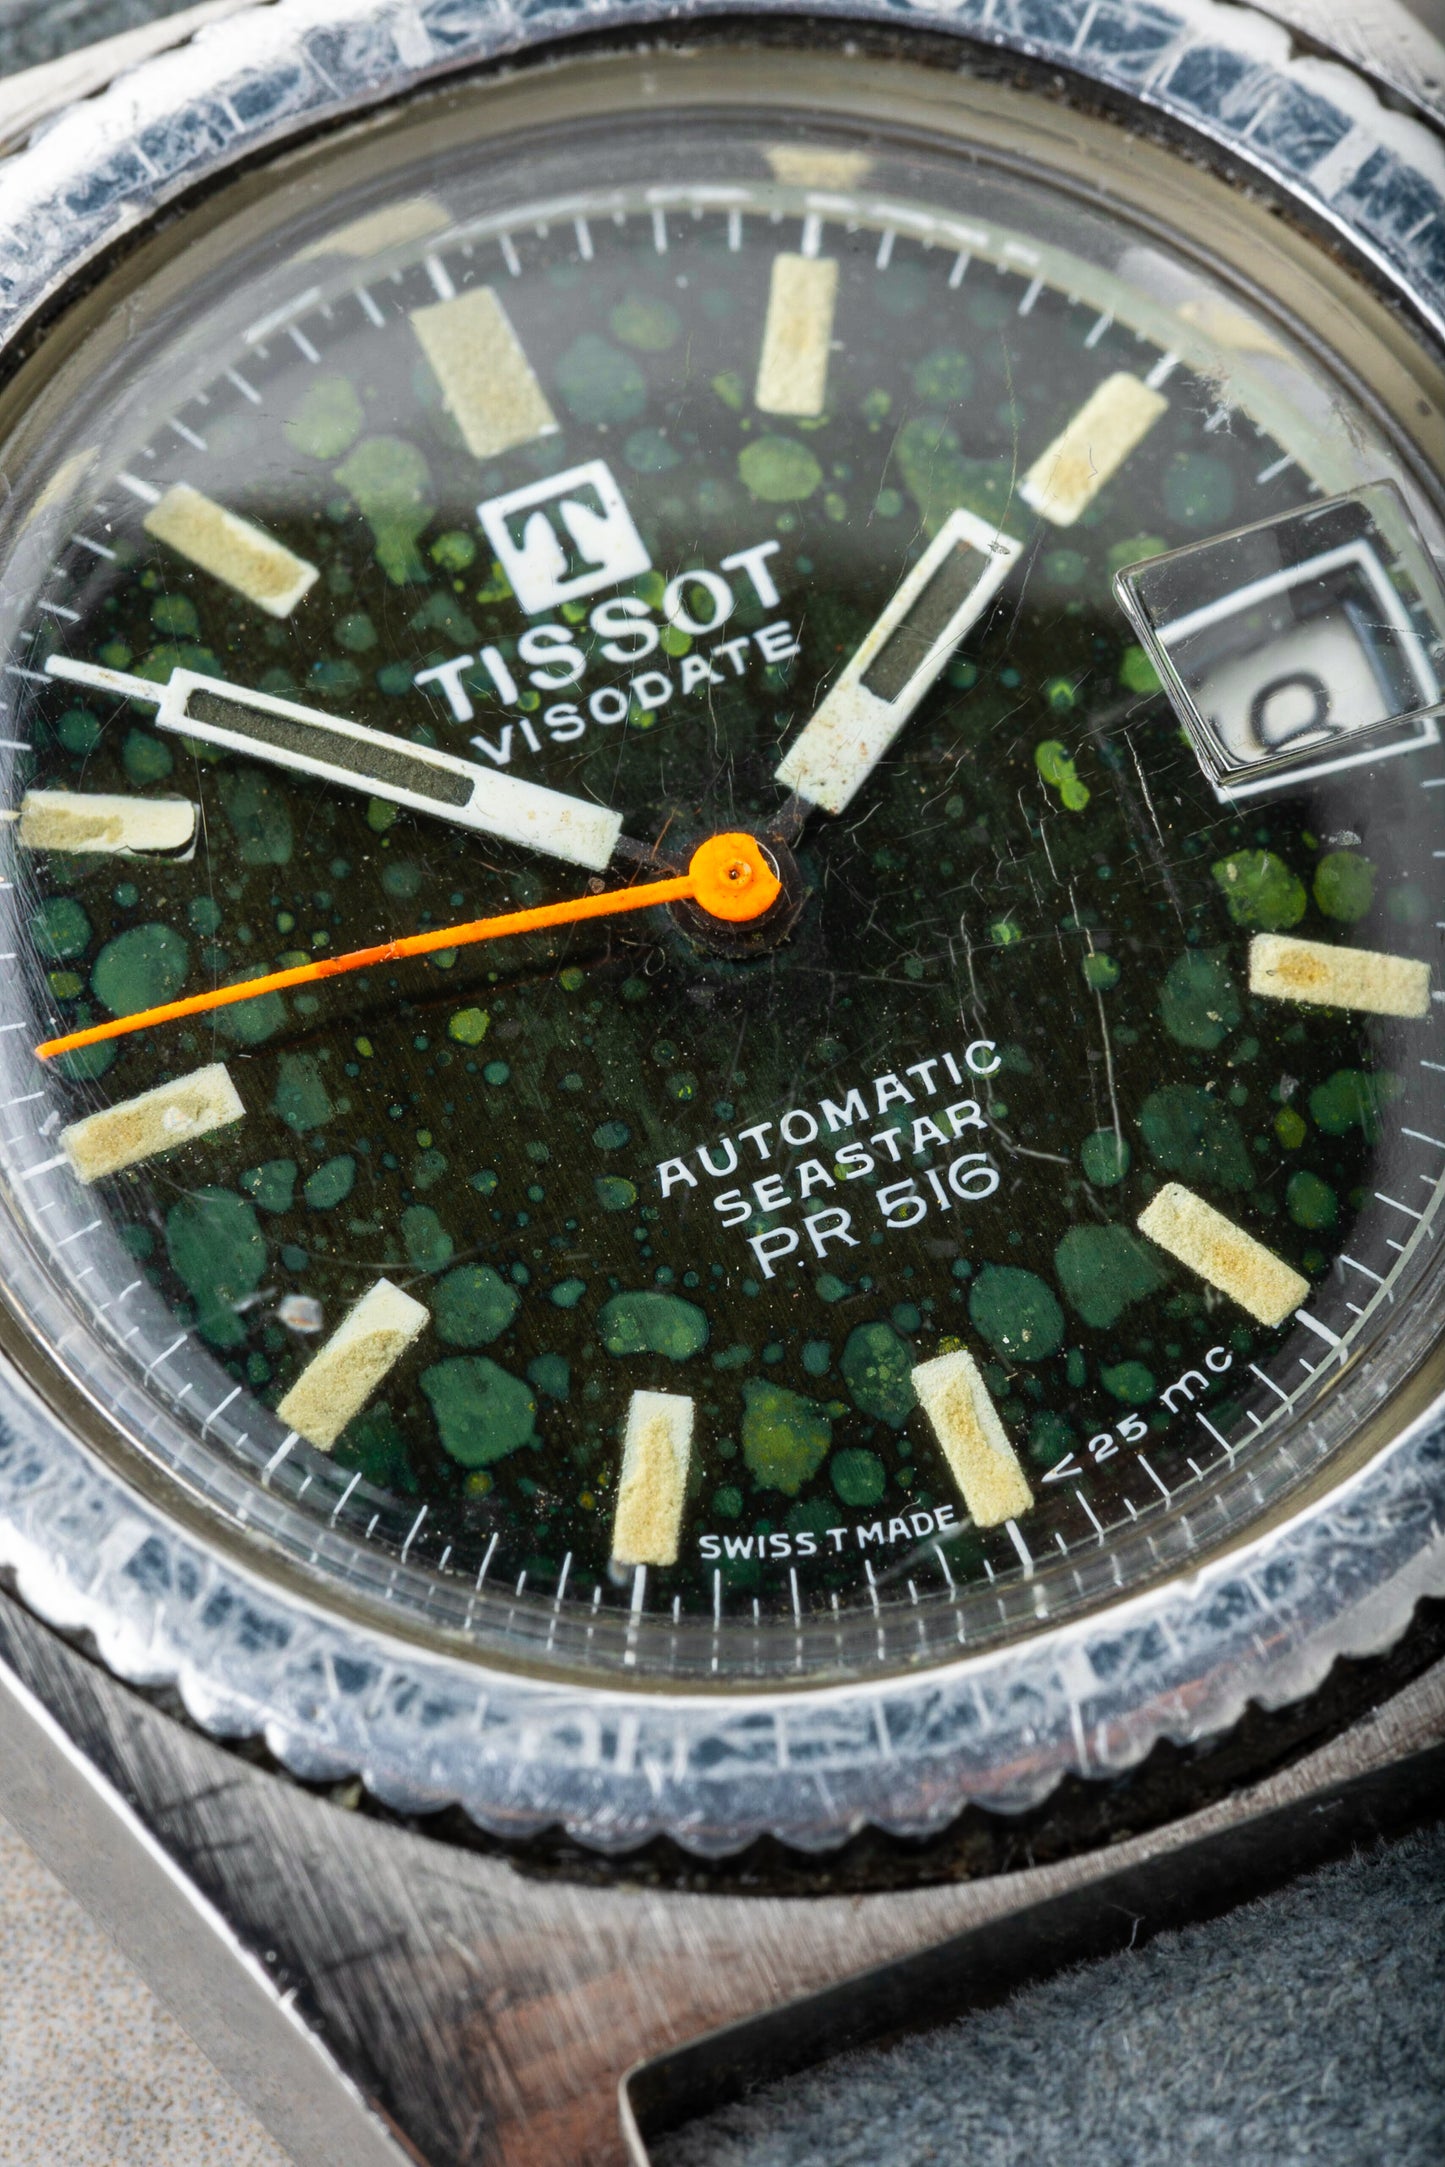 1967 Tissot Visodate Automatic Seastar PR 516